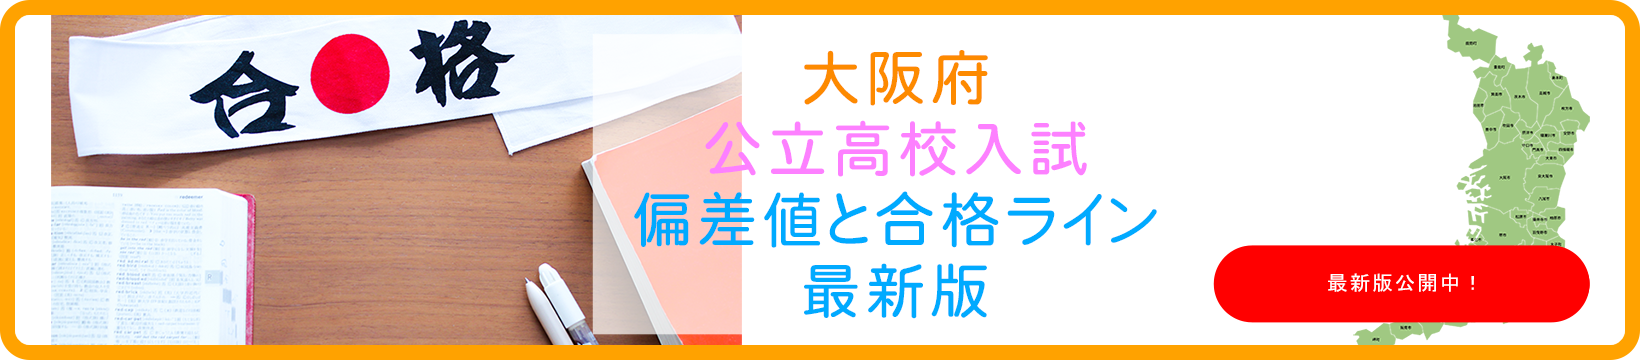 大阪の公立高校の偏差値と合格ラインの最新情報を掲載しています。